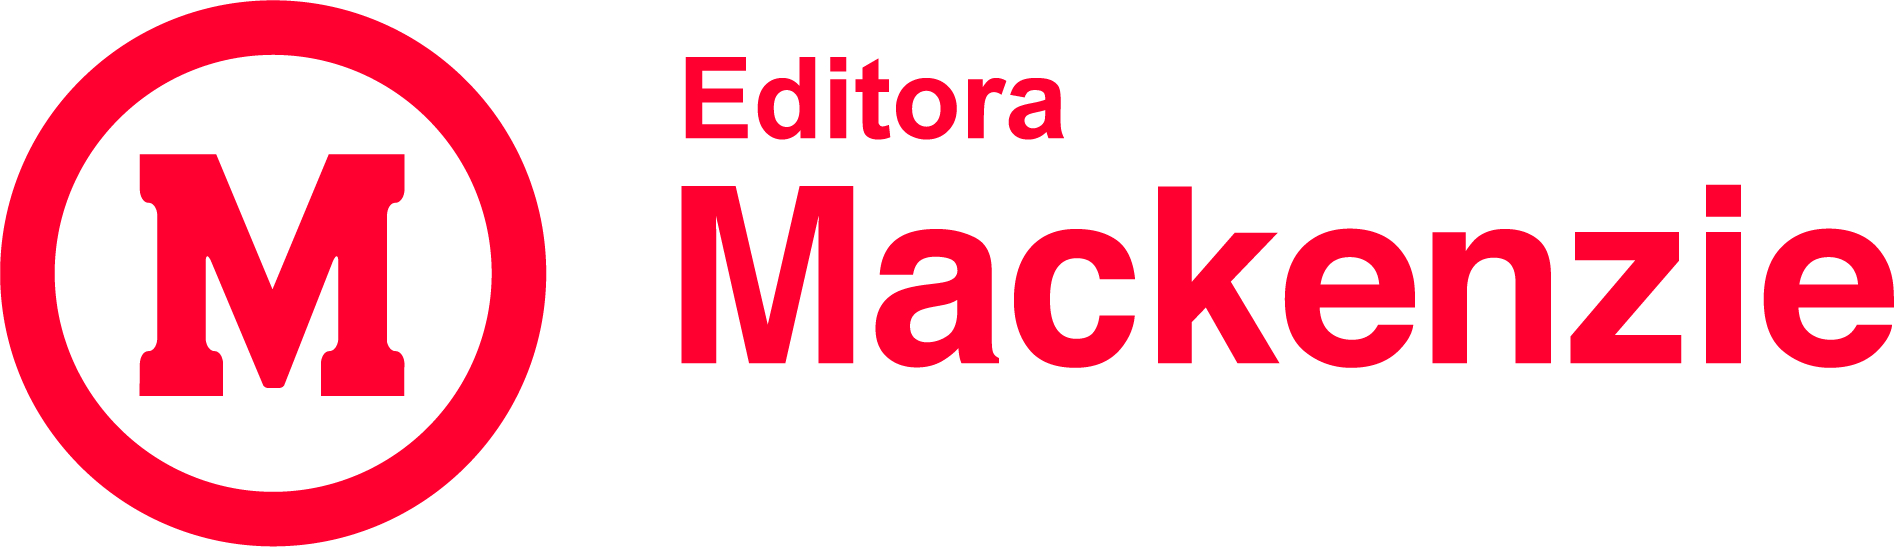 Editora Mackenzie